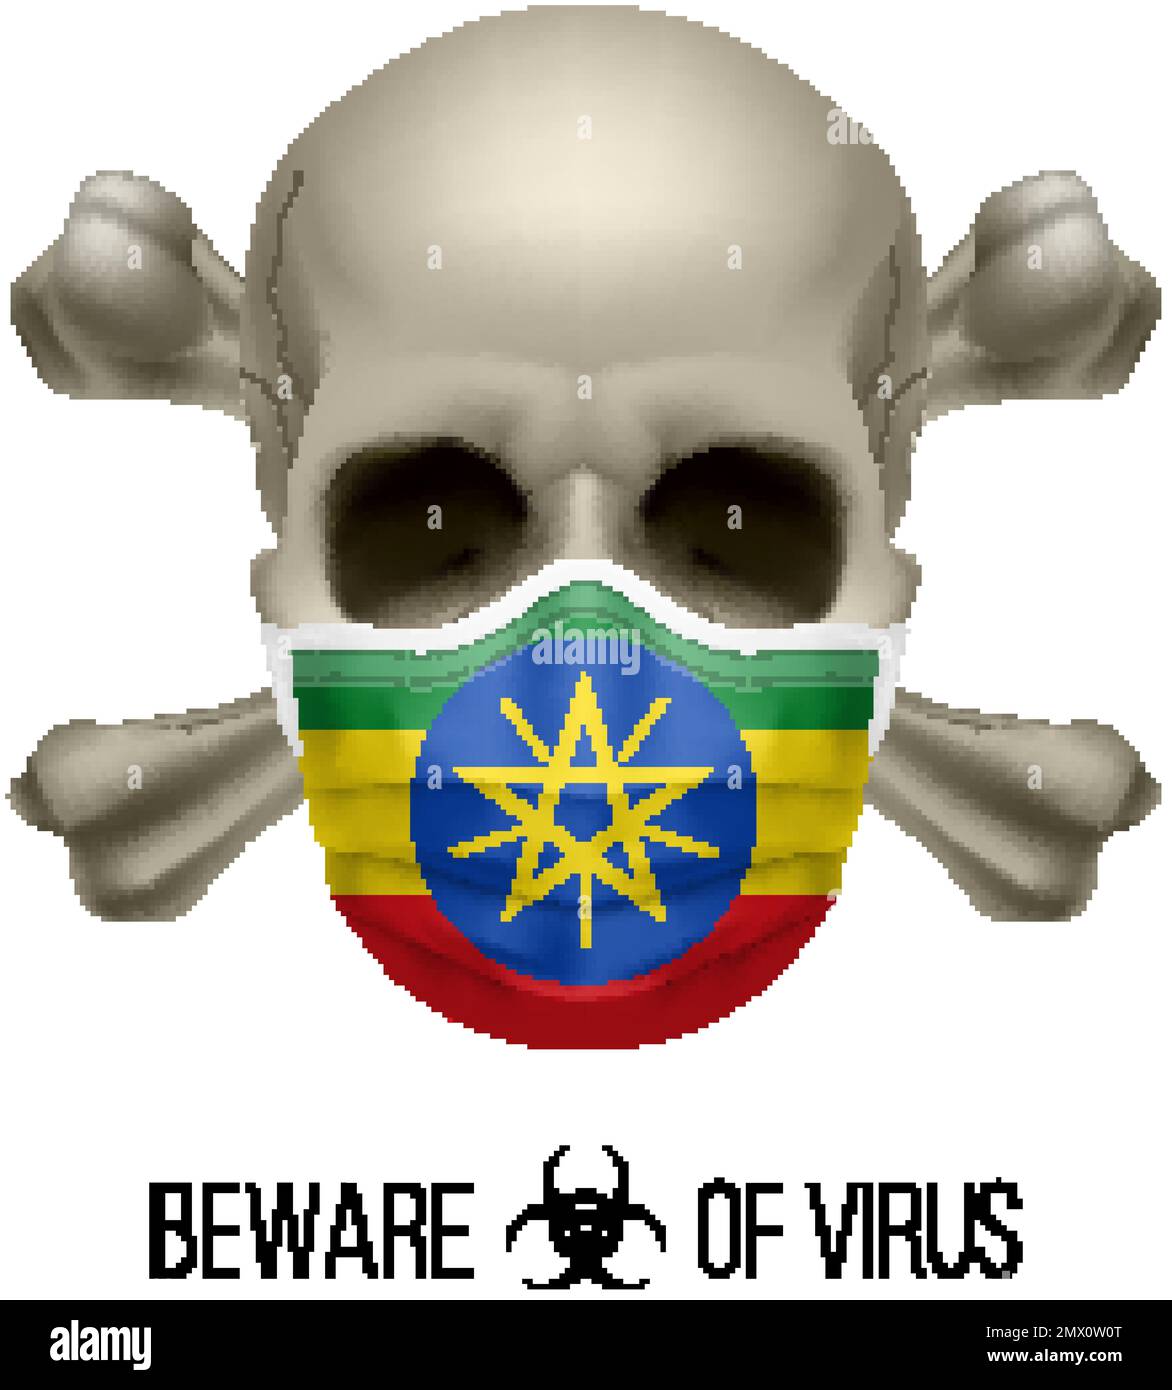 Menschlicher Schädel mit Kreuz und Operationsmaske in der Farbe der Nationalflagge Äthiopien. Maske in Form der äthiopischen Fahne und des Schädels als Begriff des Dire Stock Vektor